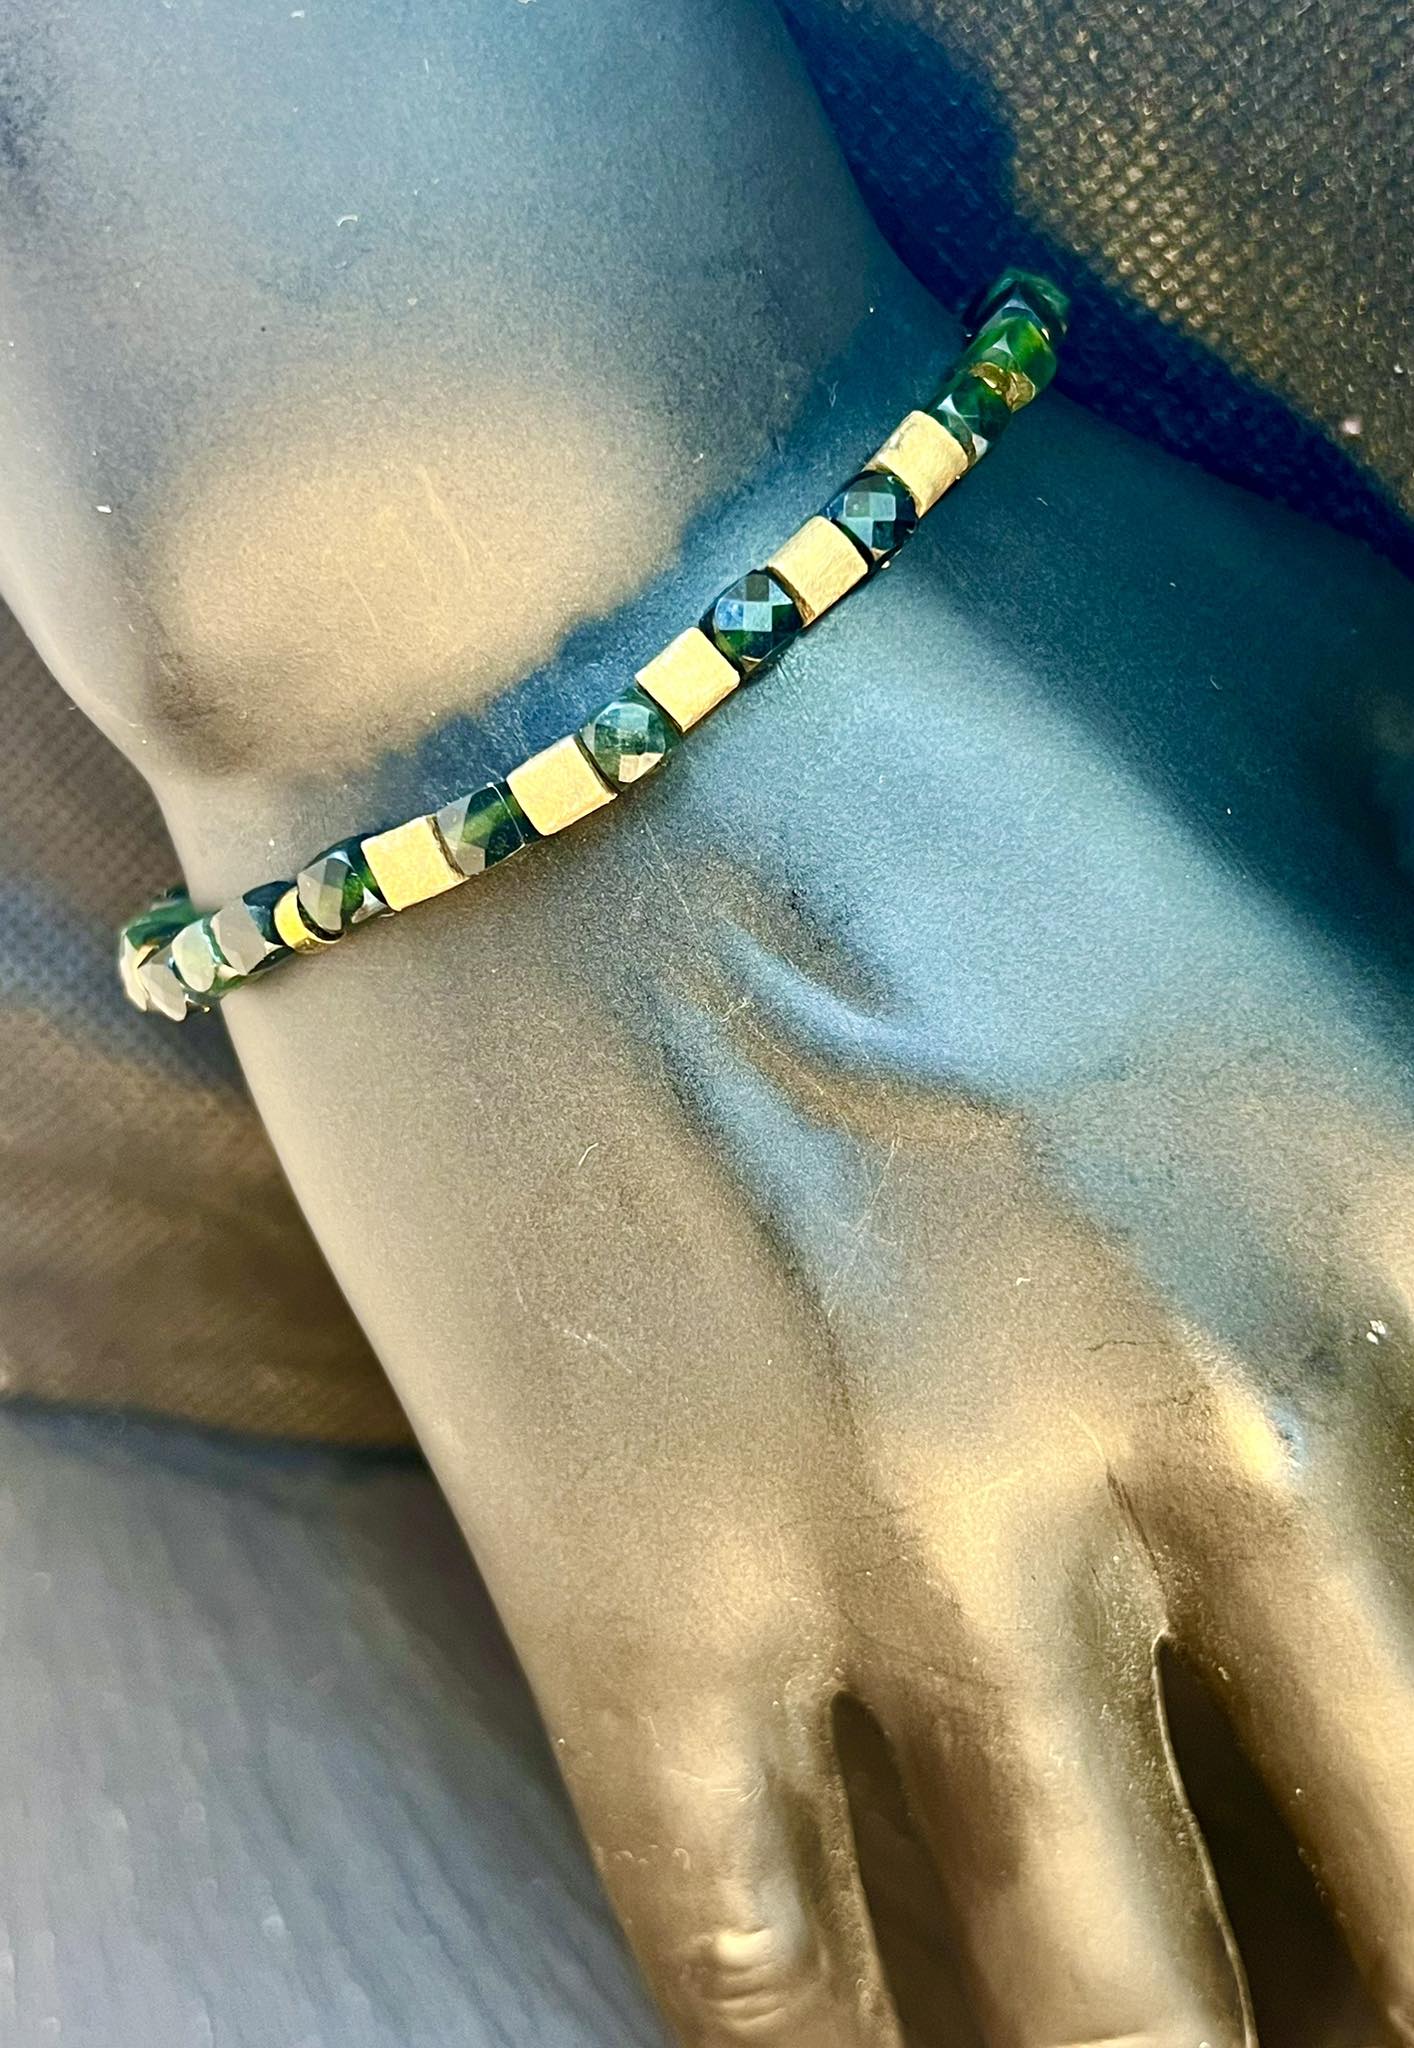 Männer grün jade armband green bracelet gold plated vergoldet cubic beads pyrite bronze